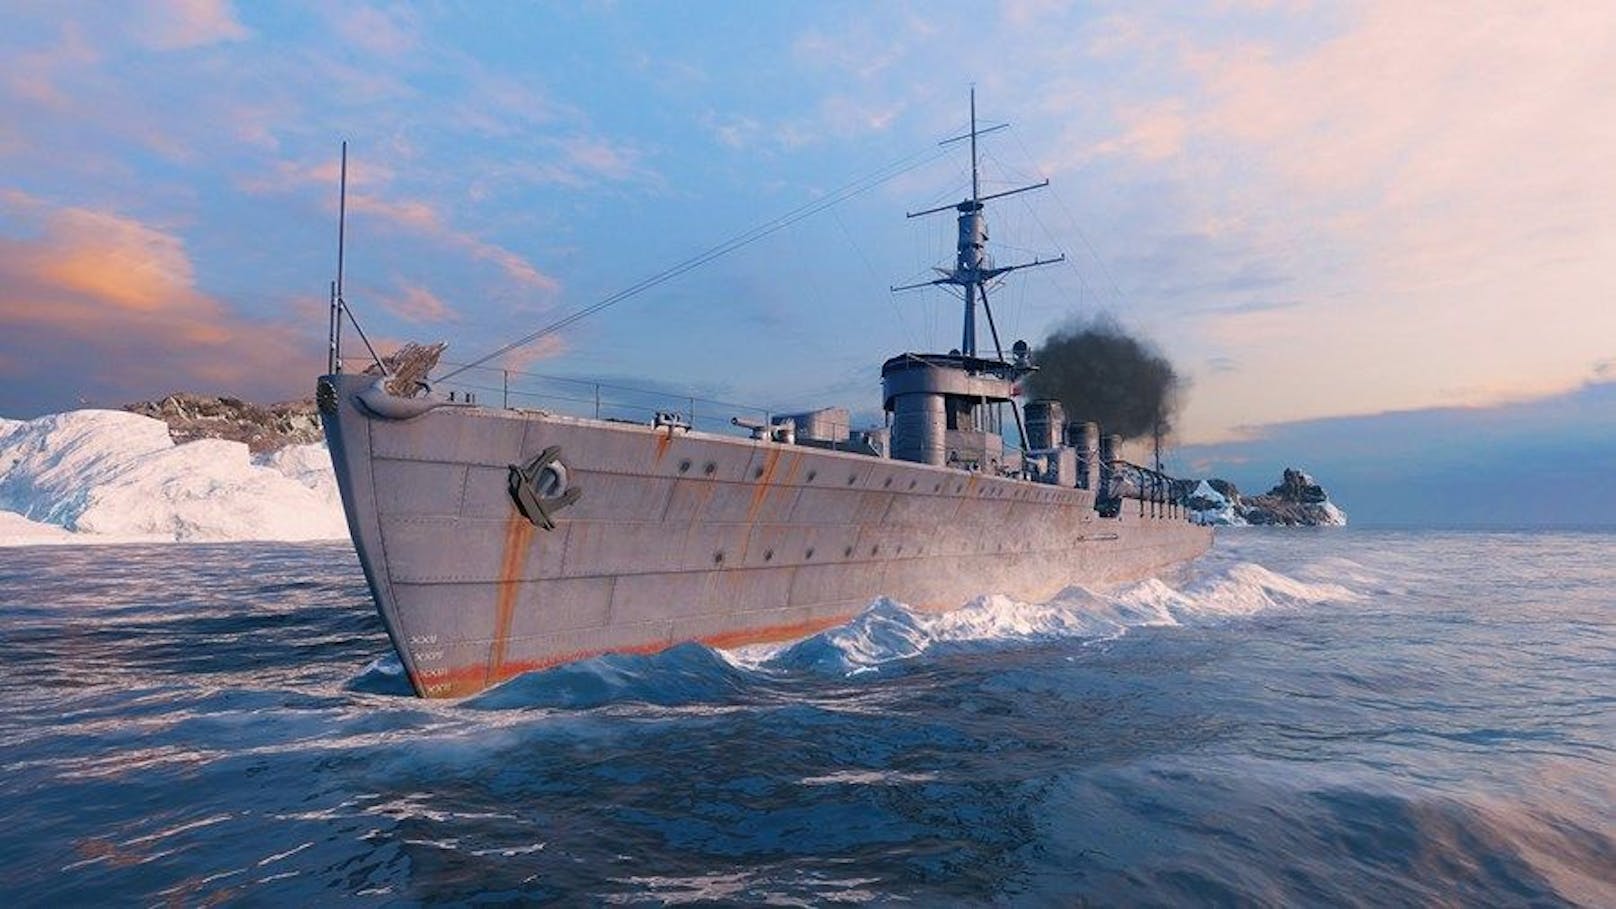 Grafisch überrascht "World of Warships" ungemein. Der Free-to-Play-Titel bietet auch neben den bereits erwähnten, sehr detaillierten Schiffen tolle Effekte und Umgebungen.